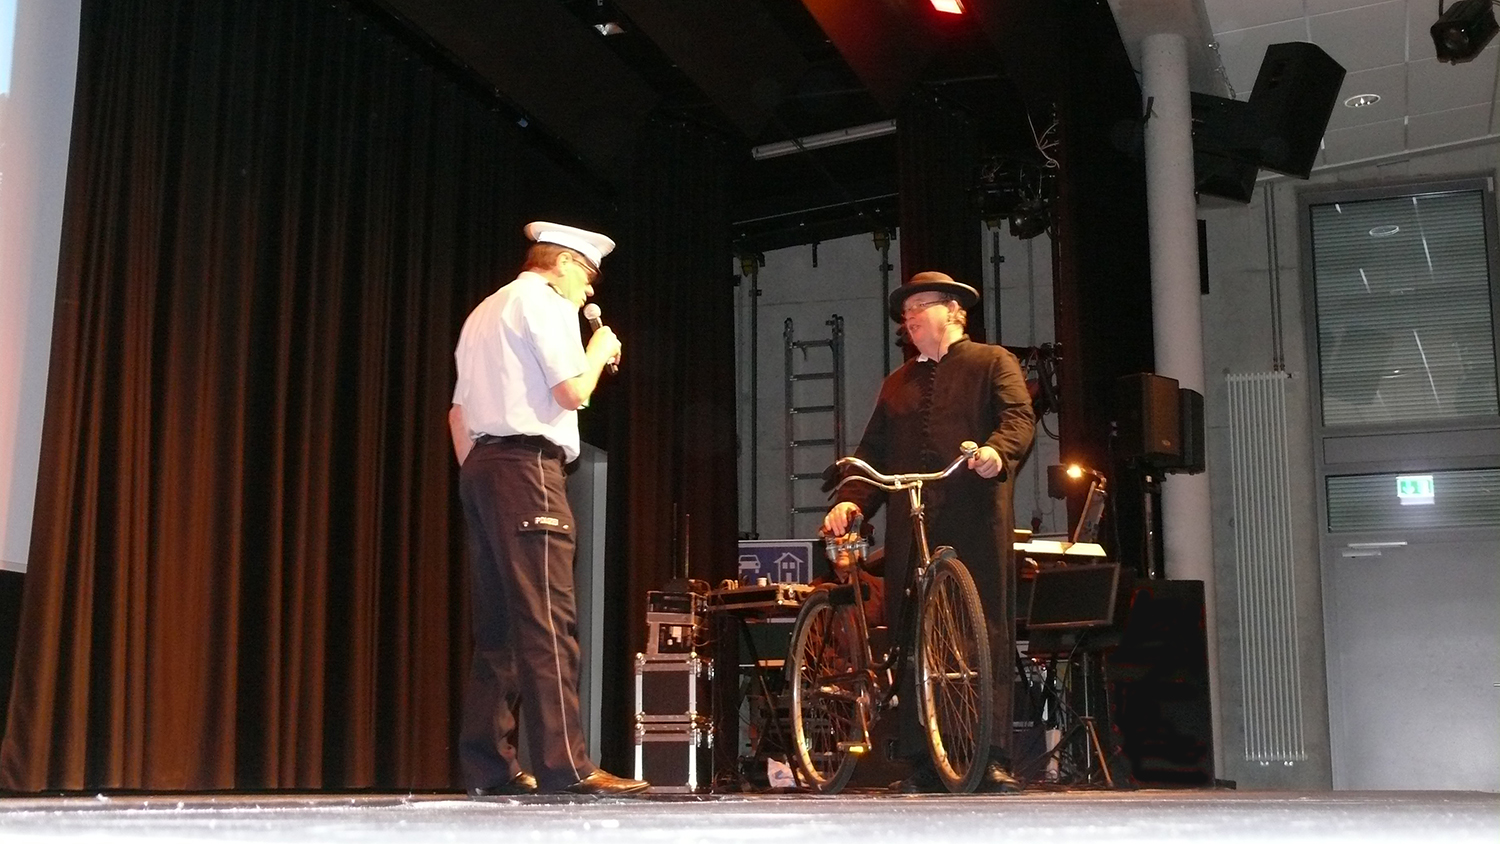 Polizeibeamte als Schauspieler auf der Bühne